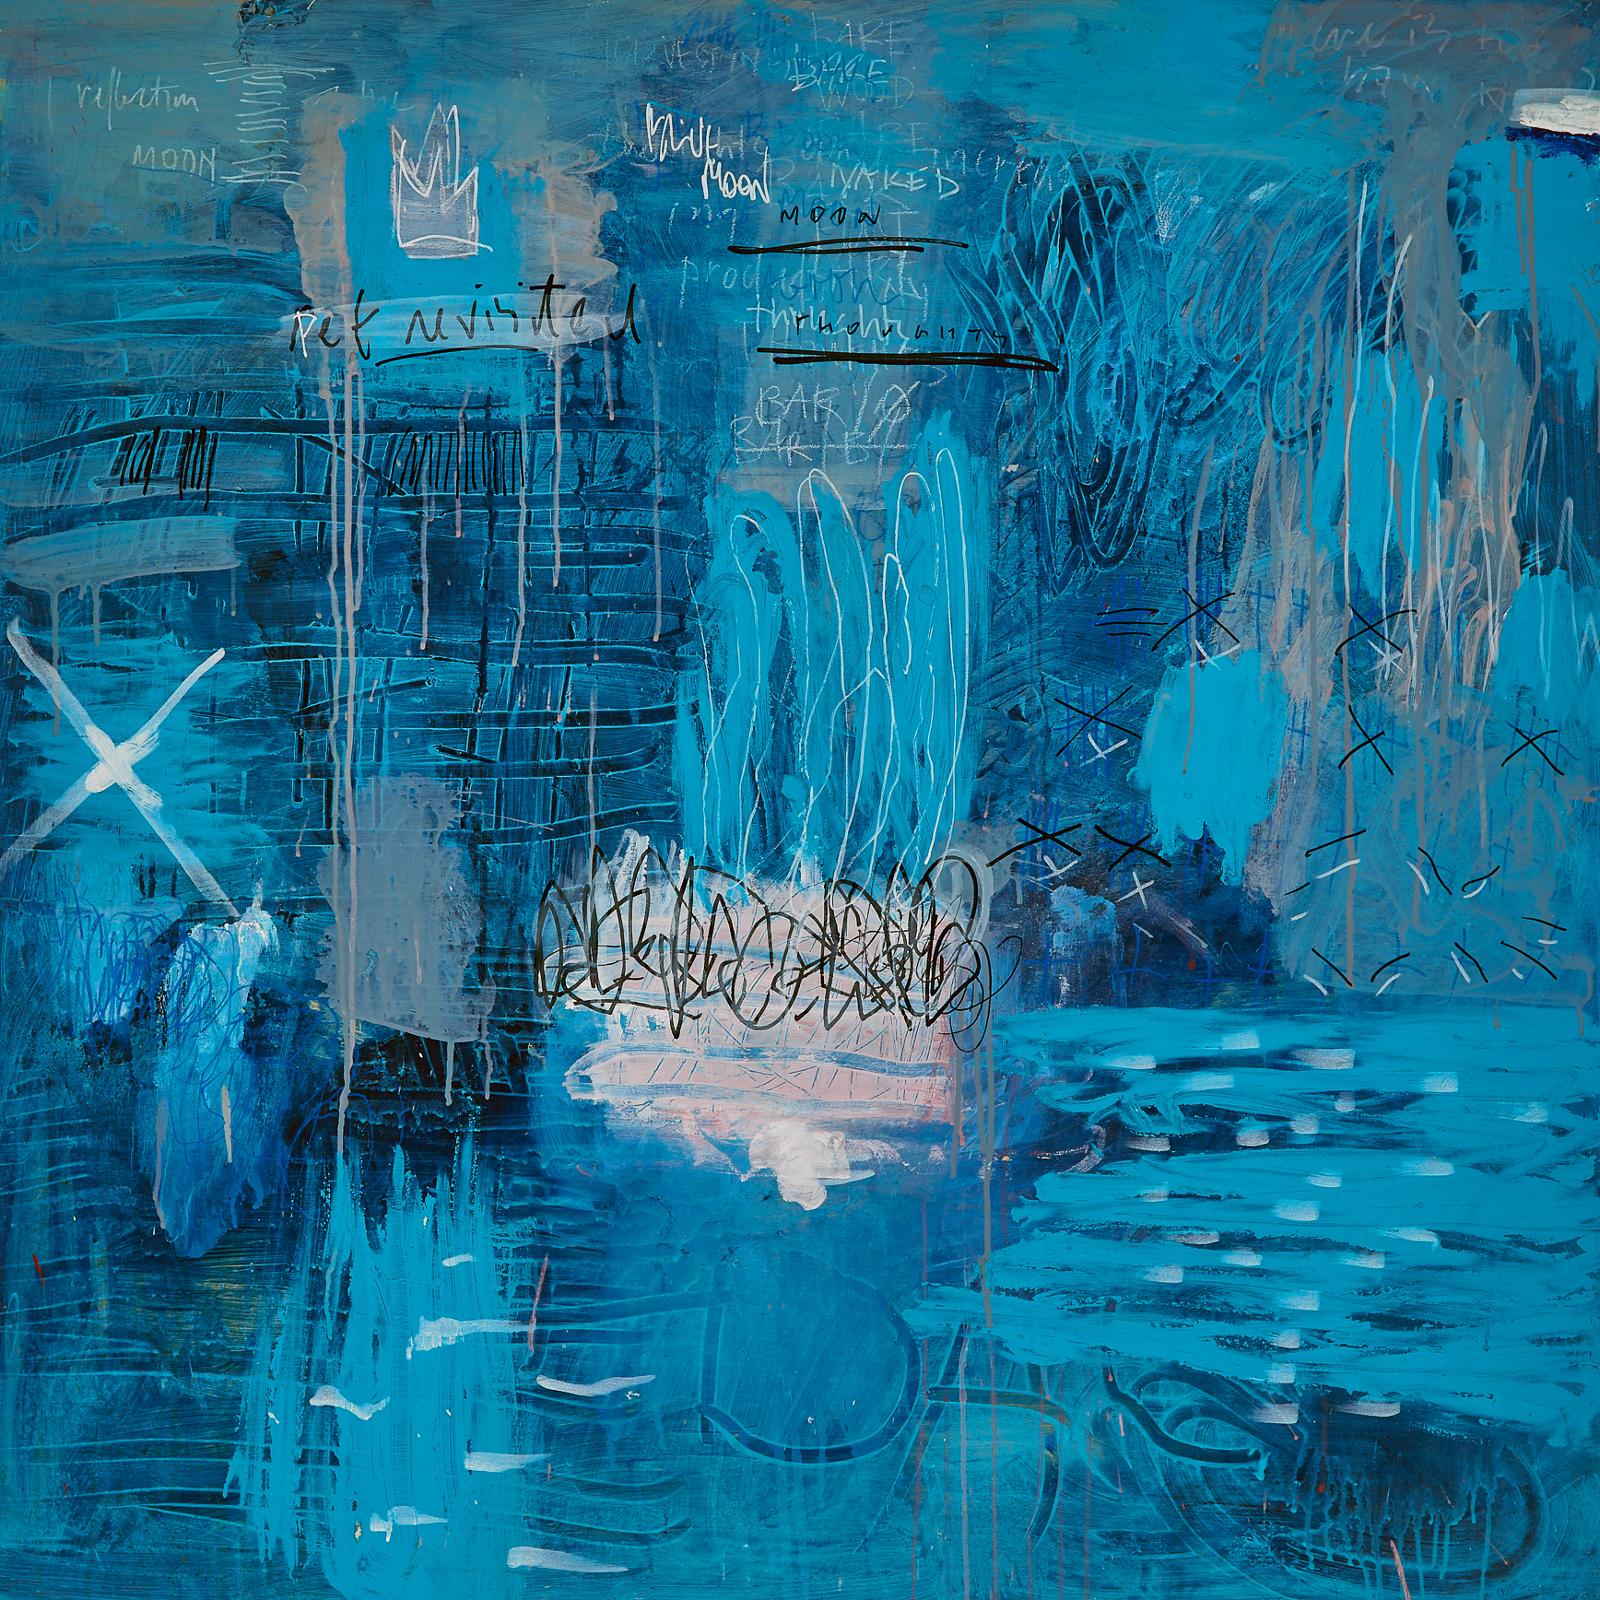 Doug Stone (1951) - Blue Moon, 2012